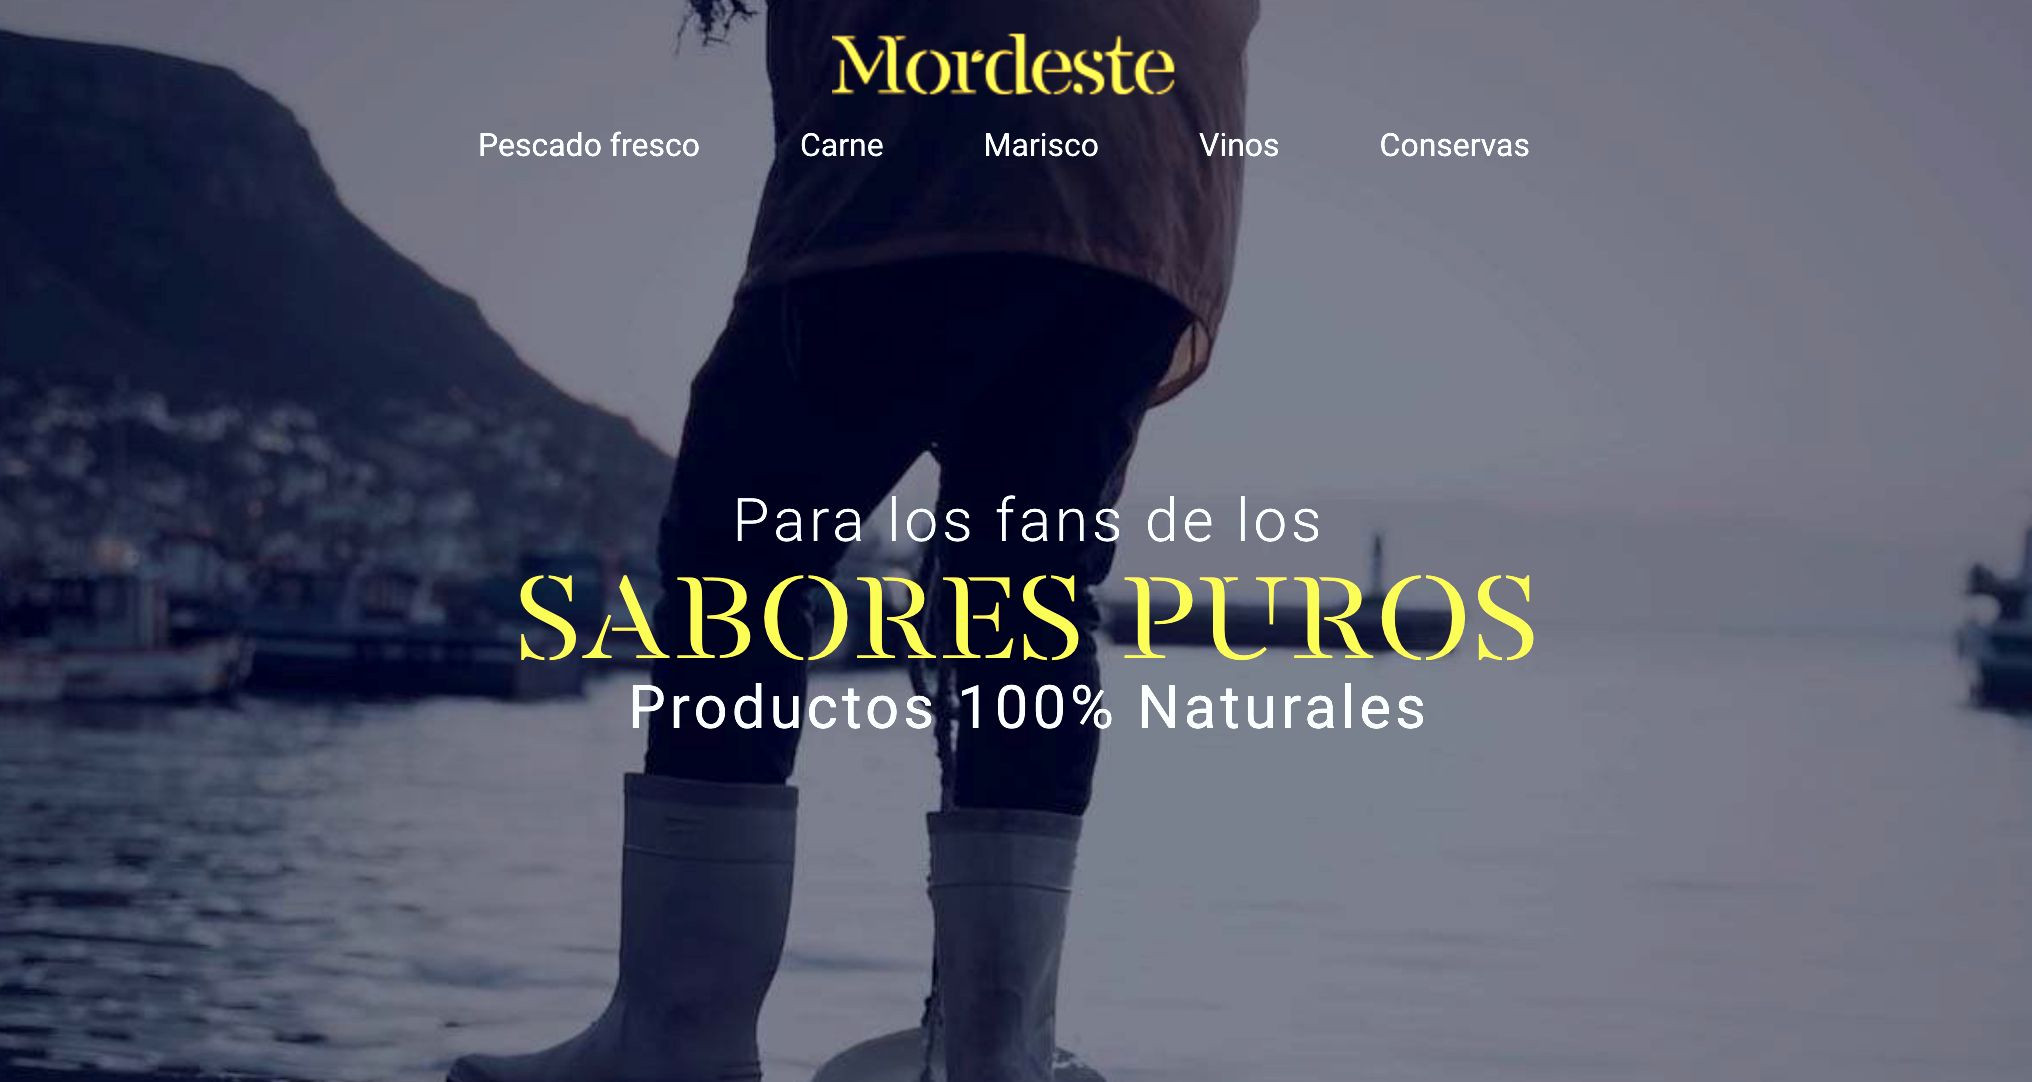 Tienda online de productos gallegos. Foto: Mordeste